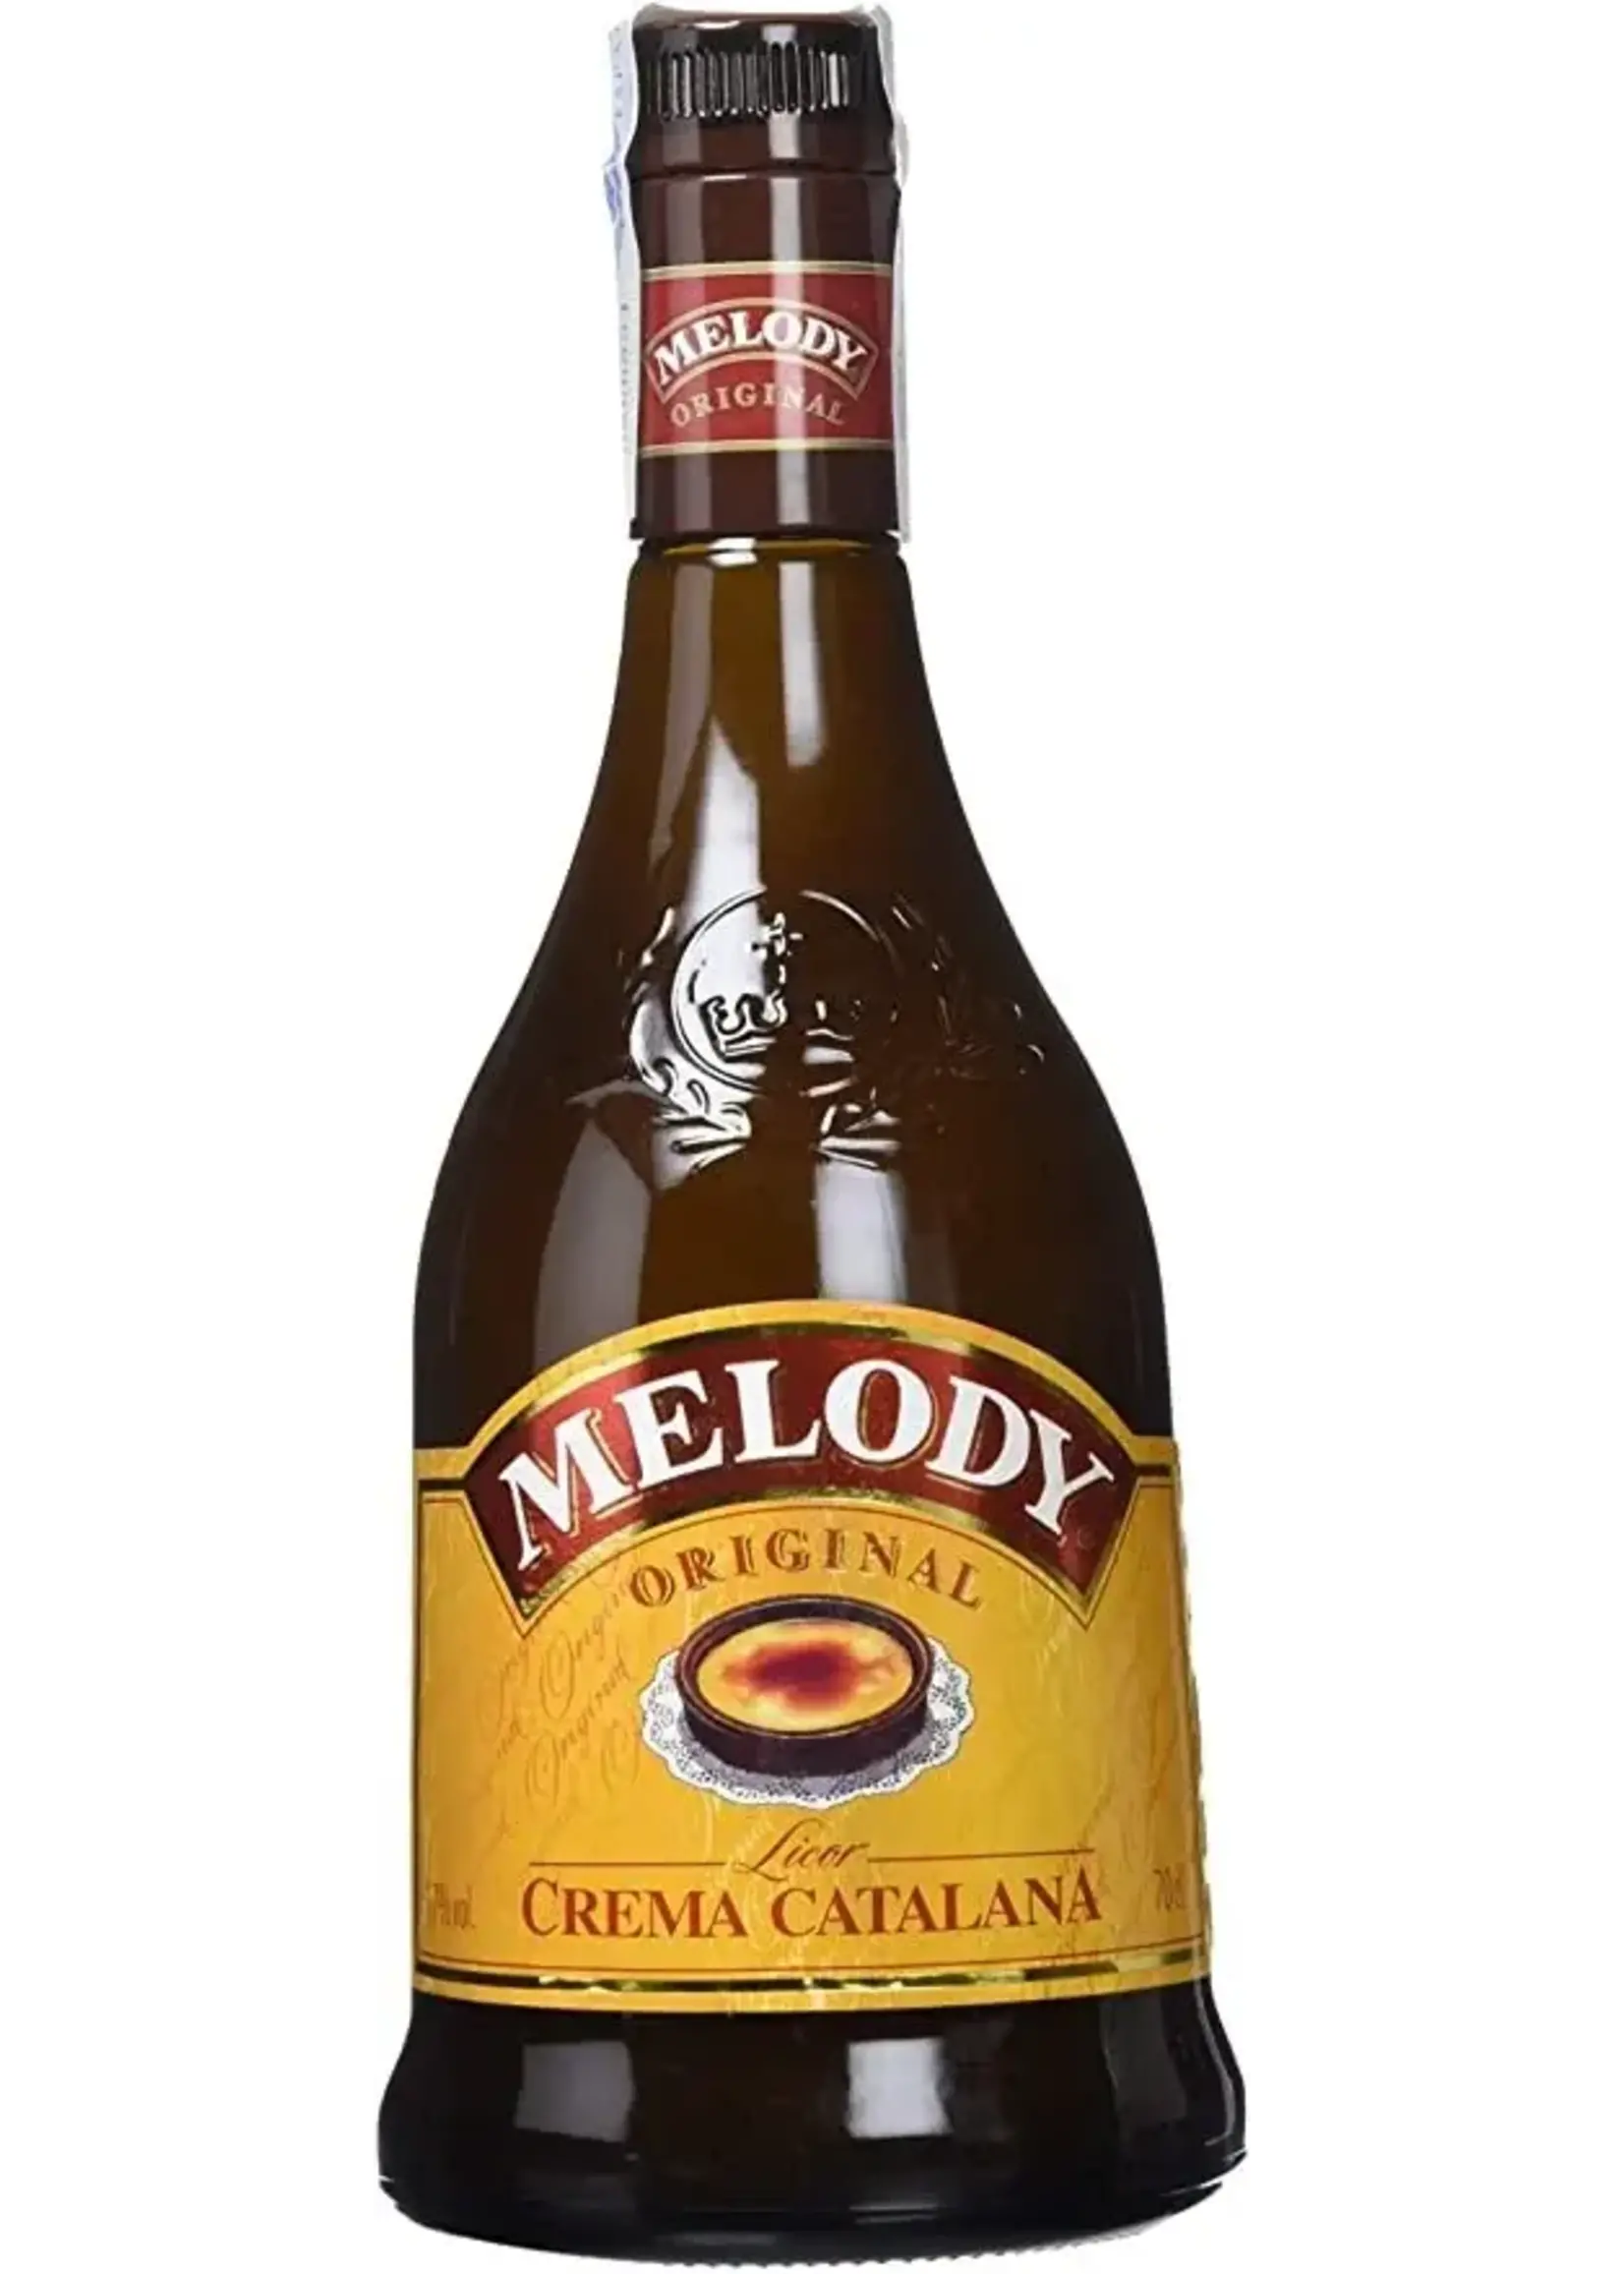 Melody Melody Crema Catalana 70 cl